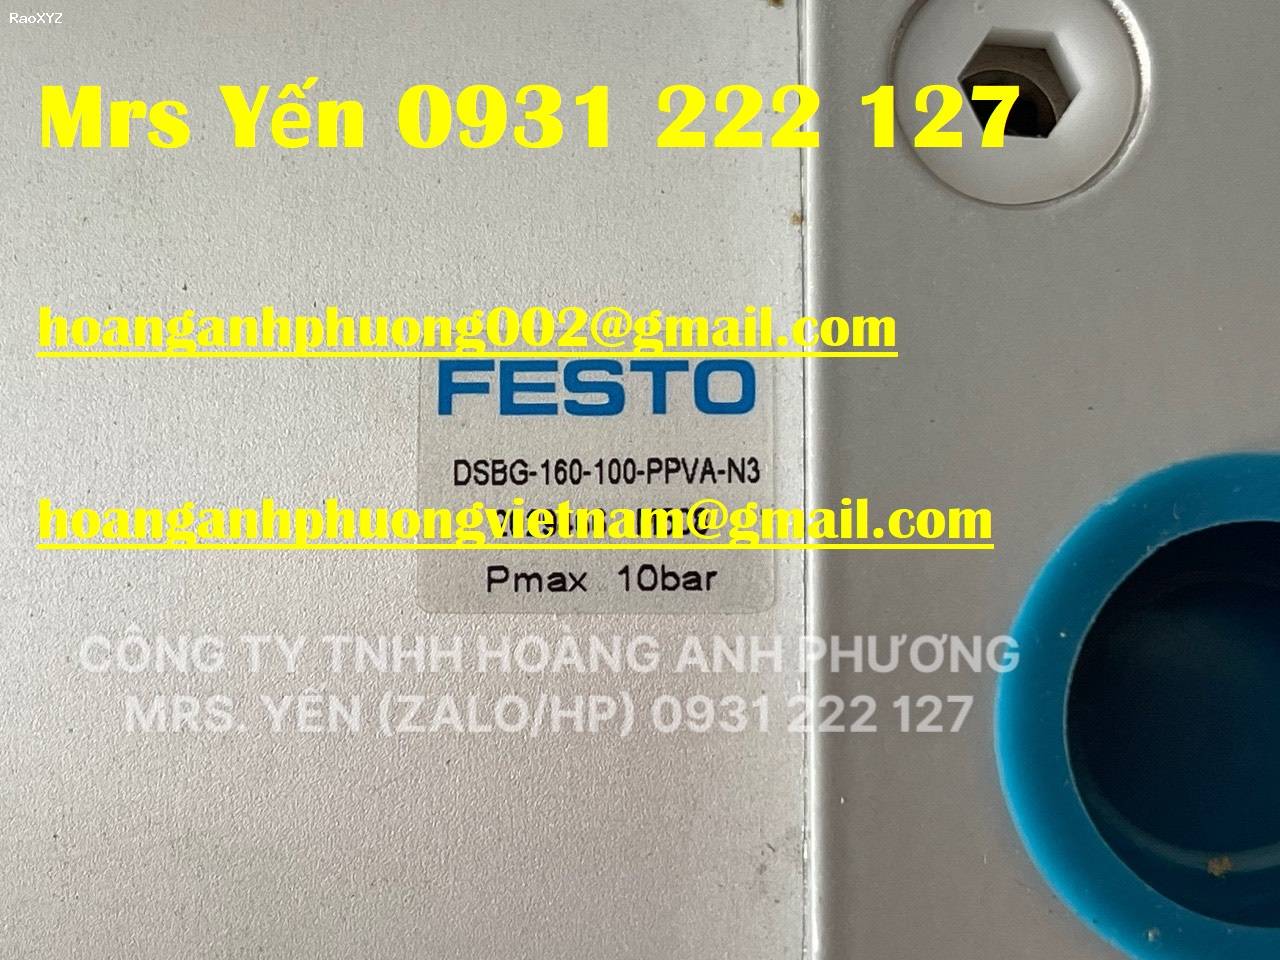 Festo DSBG-160-100-PP VA-N3 Xy lanh giá tốt tại Bình Dương